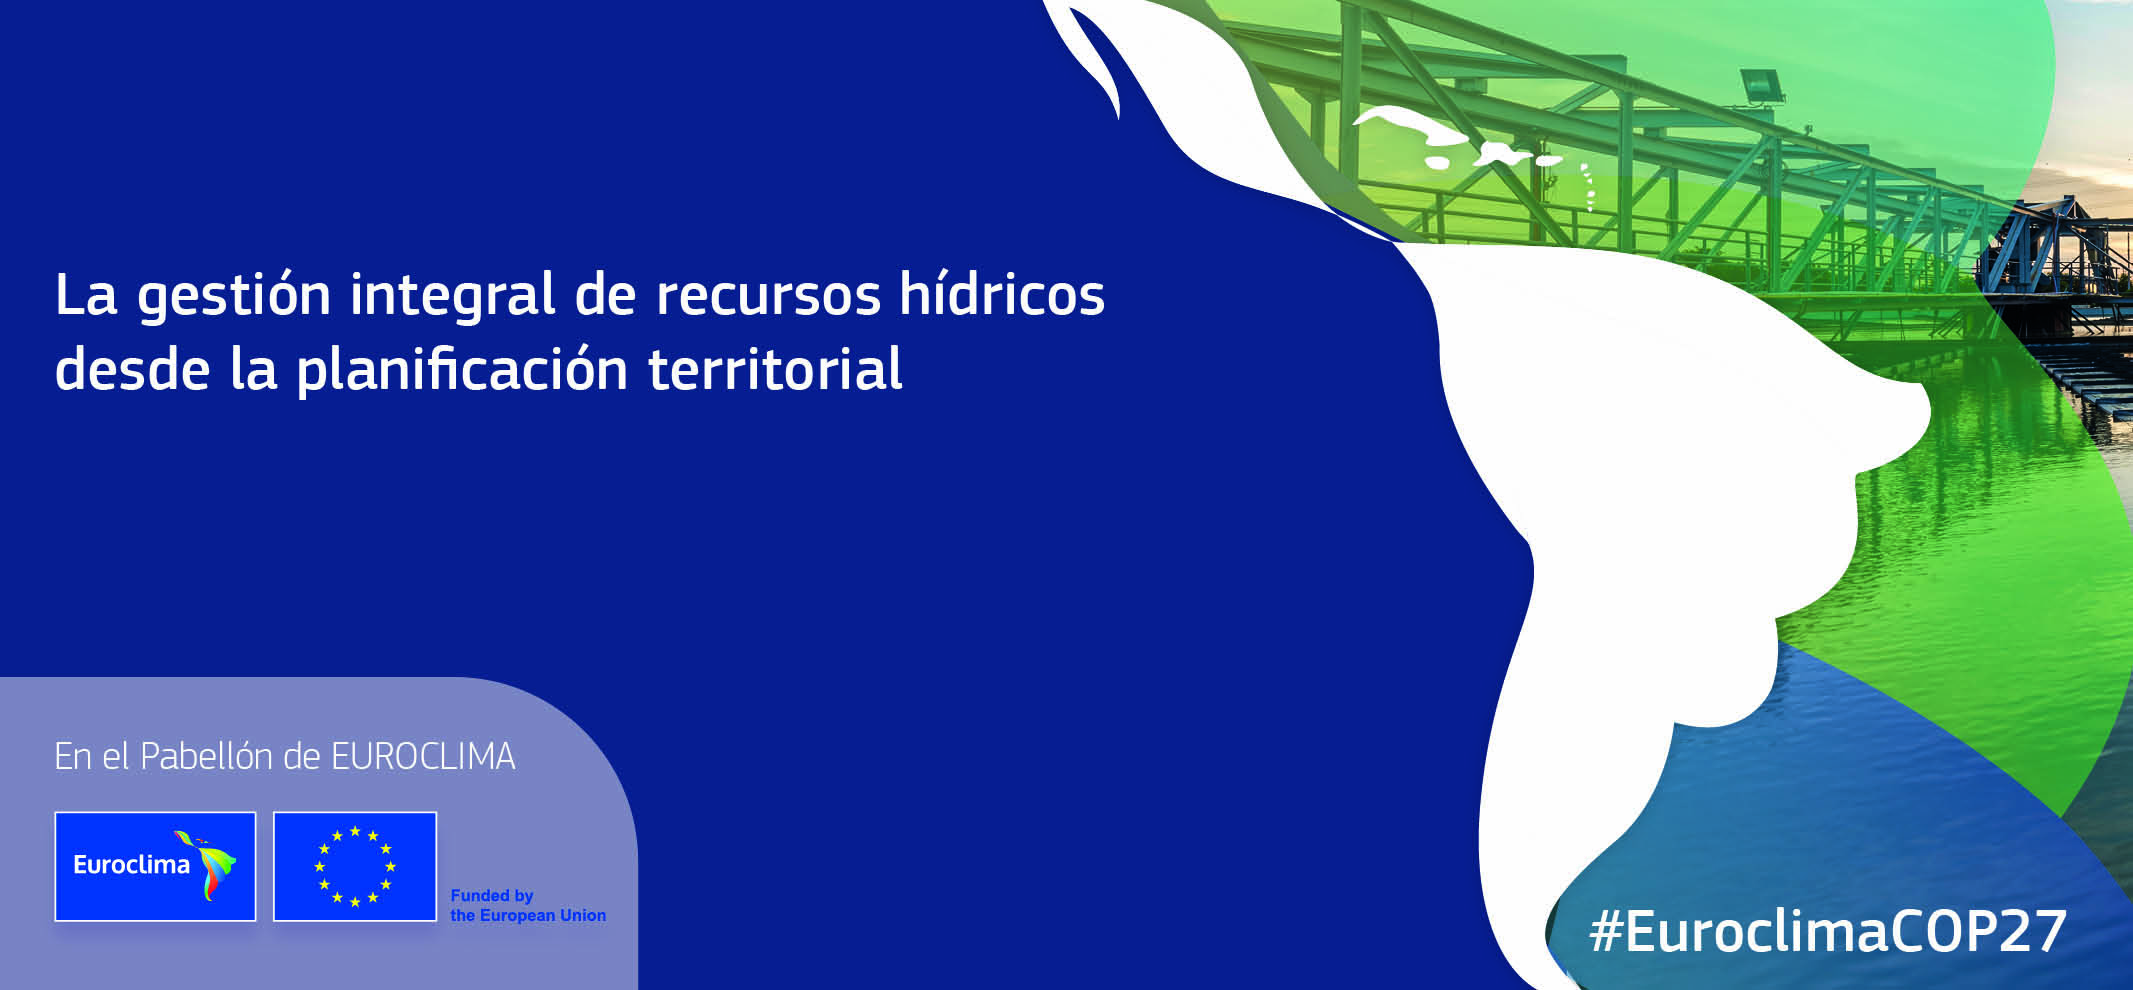 La gestion integral de recursos hidricos desde la planificacion territorial